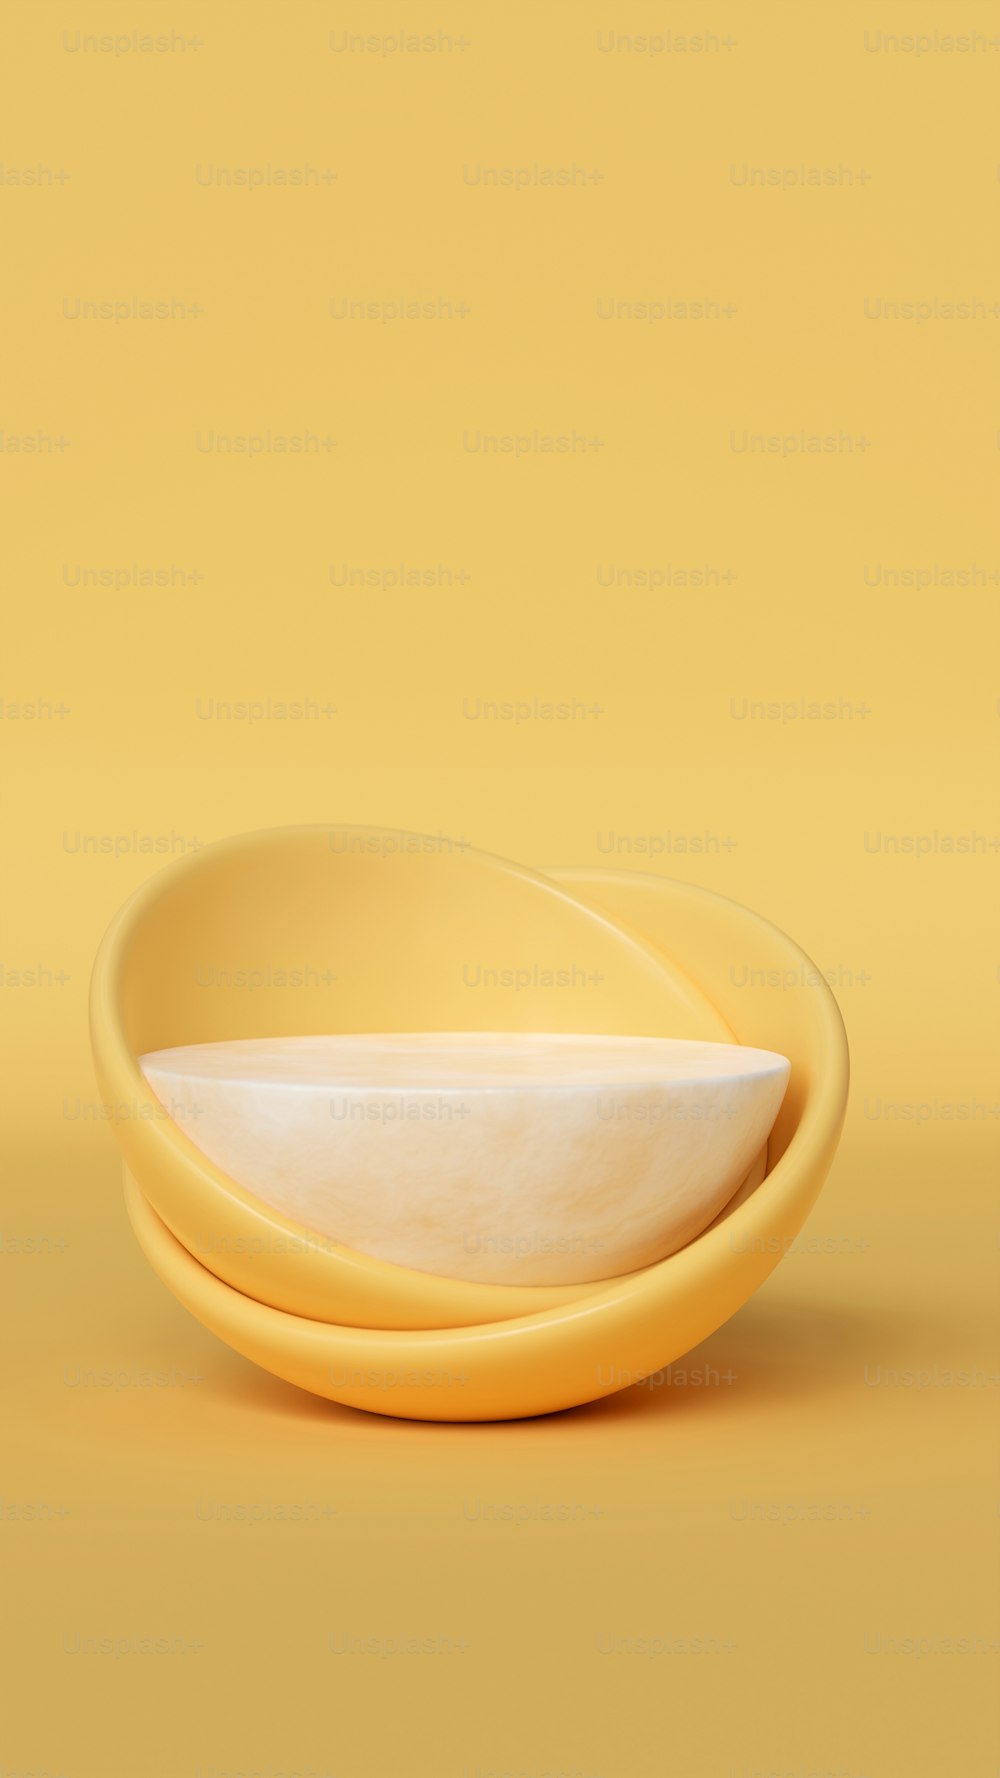 un piatto giallo con una ciotola bianca sopra di esso